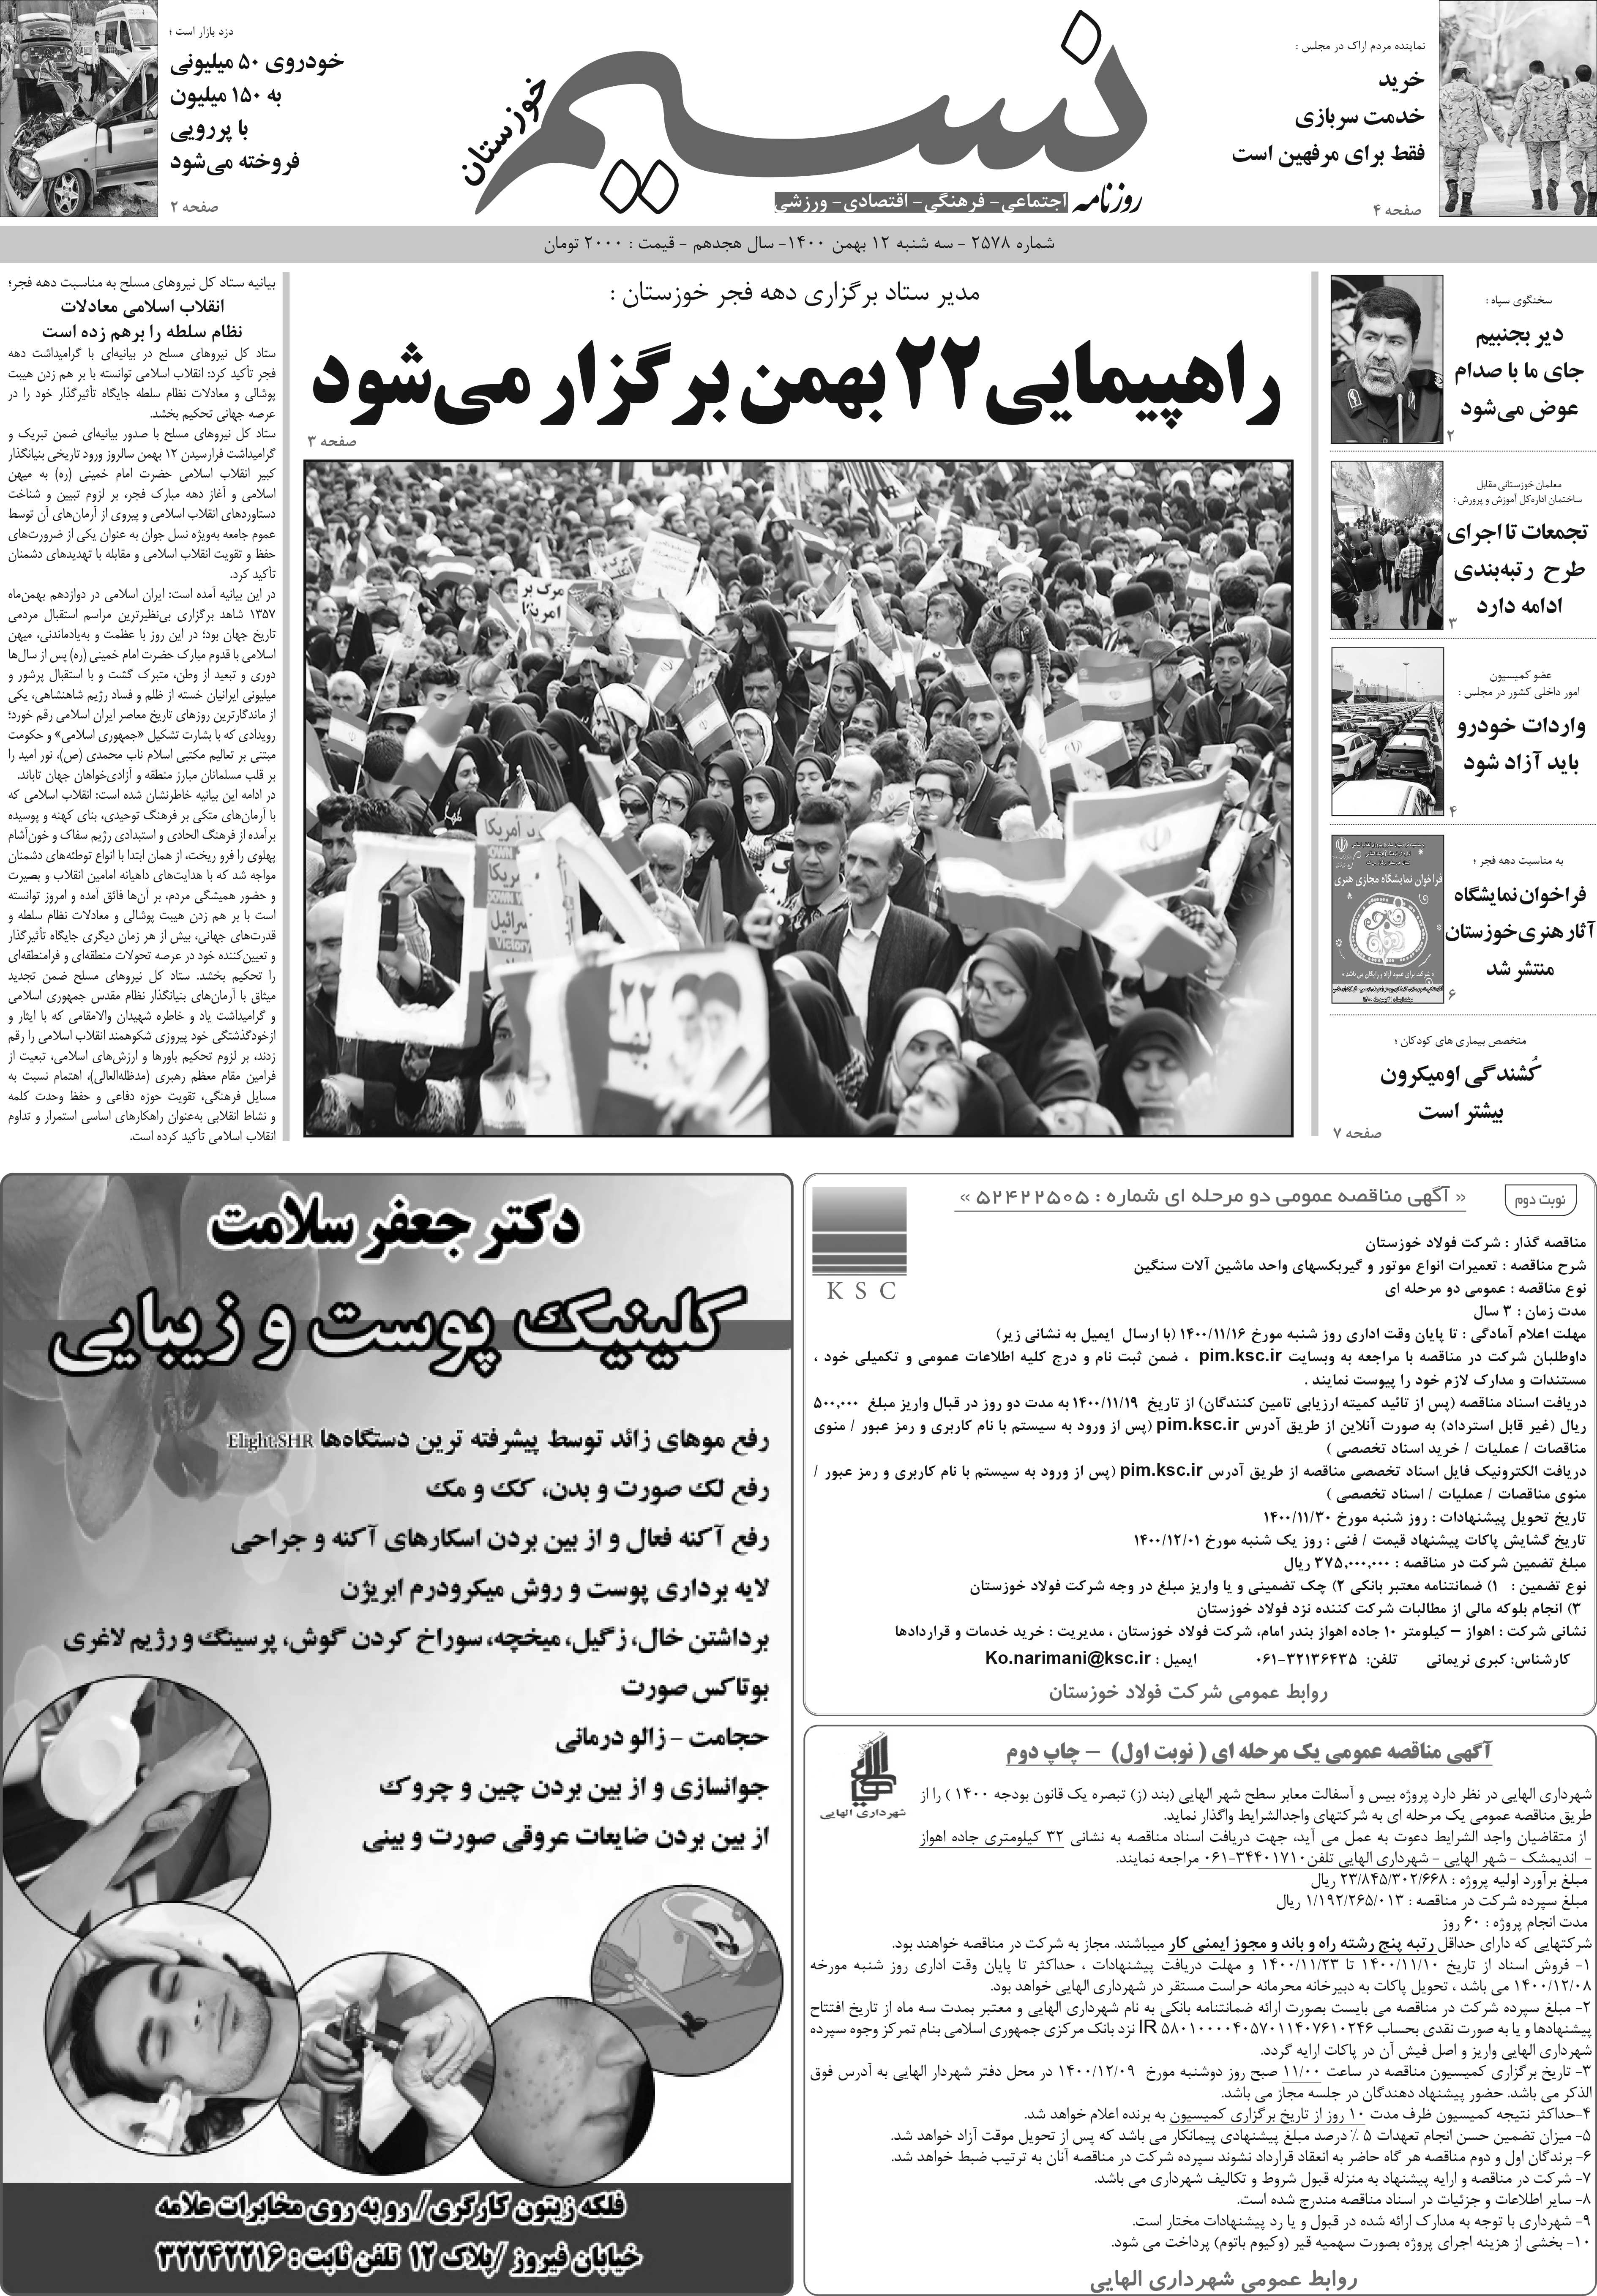 صفحه اصلی روزنامه نسیم شماره 2578 